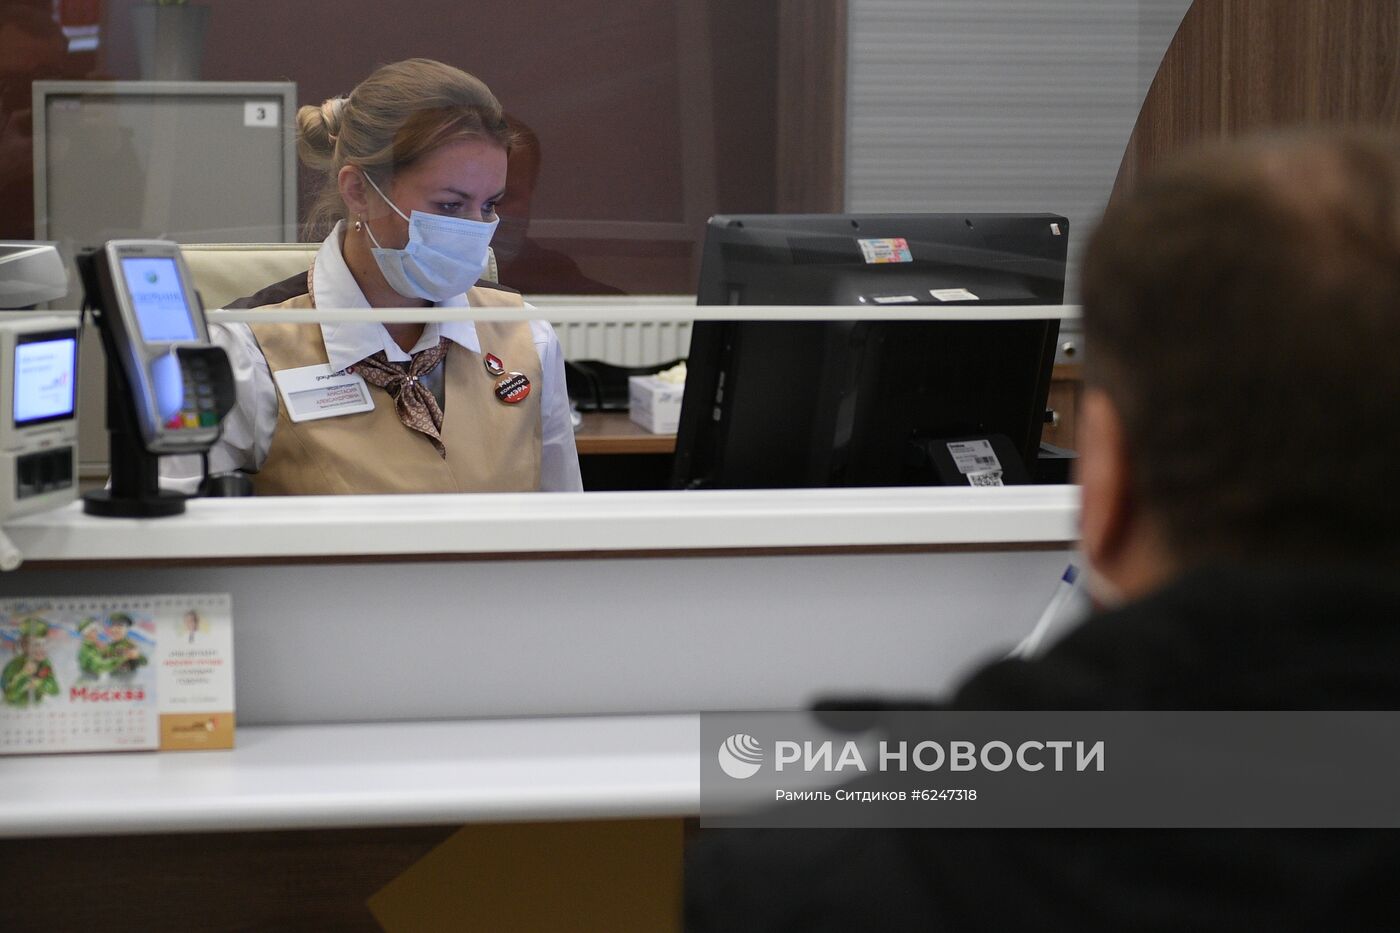 Центры госуслуг "Мои документы" возобновят работу в Москве с 25 мая